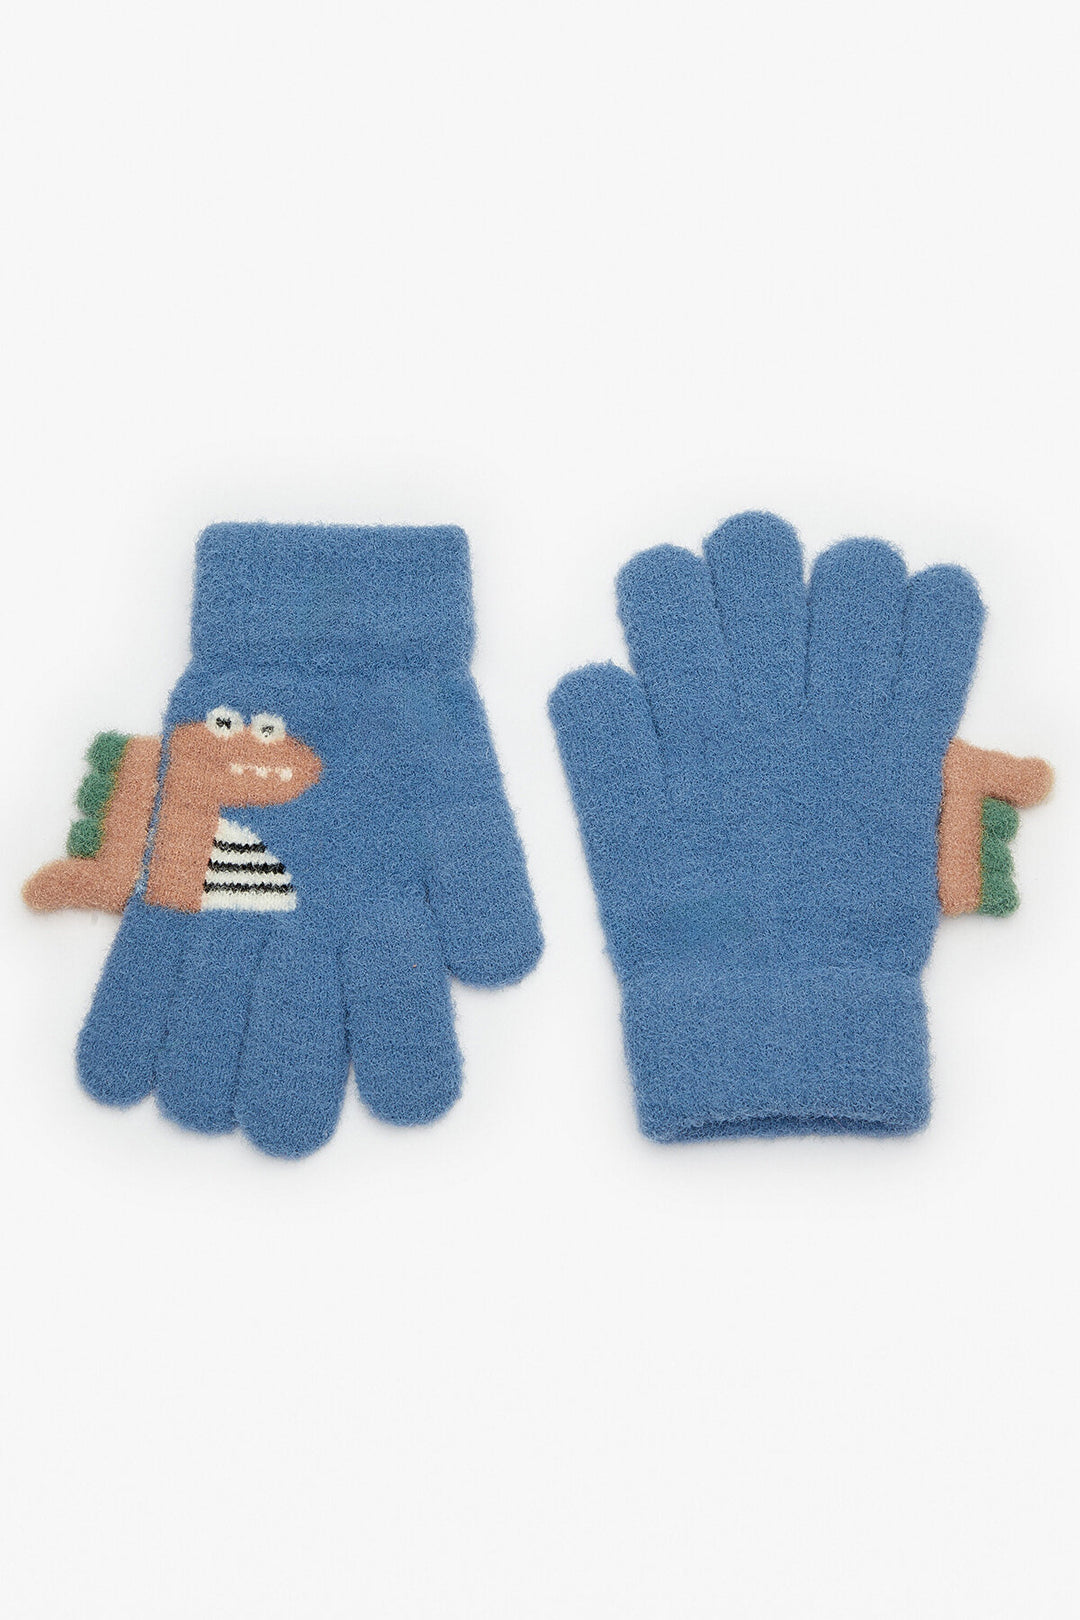 Boys Dino Glove